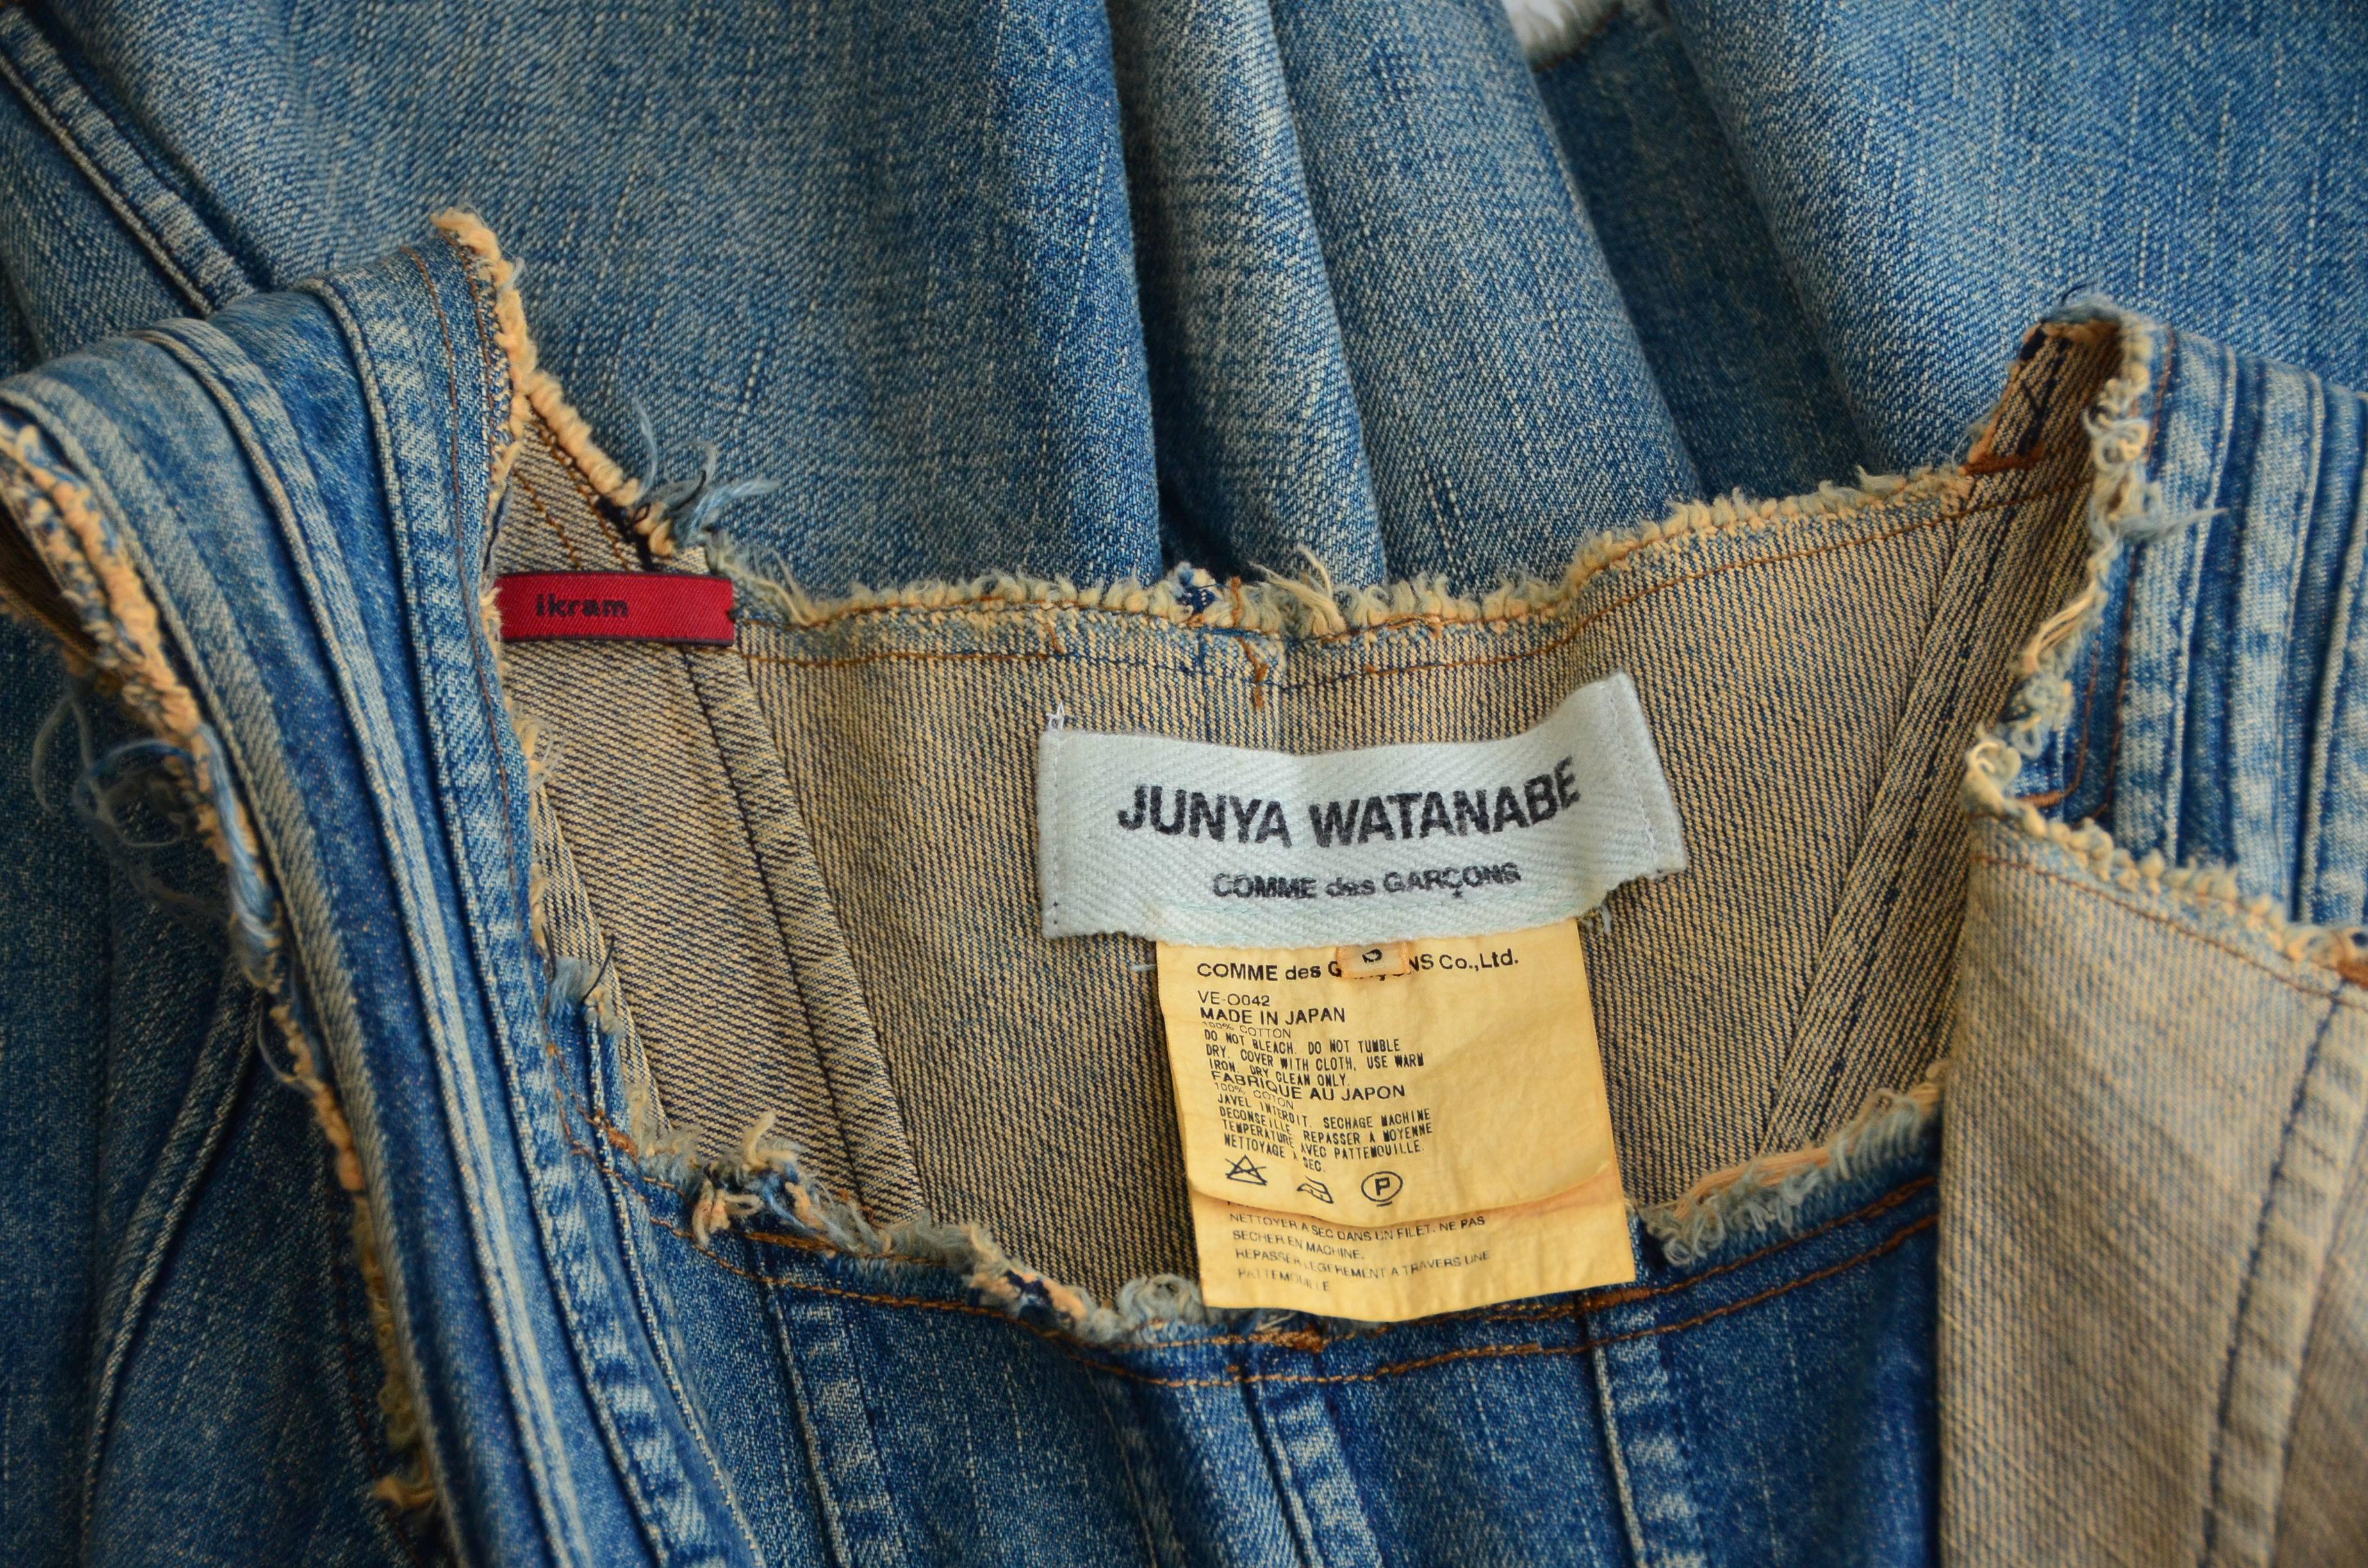 junya watanabe clothing